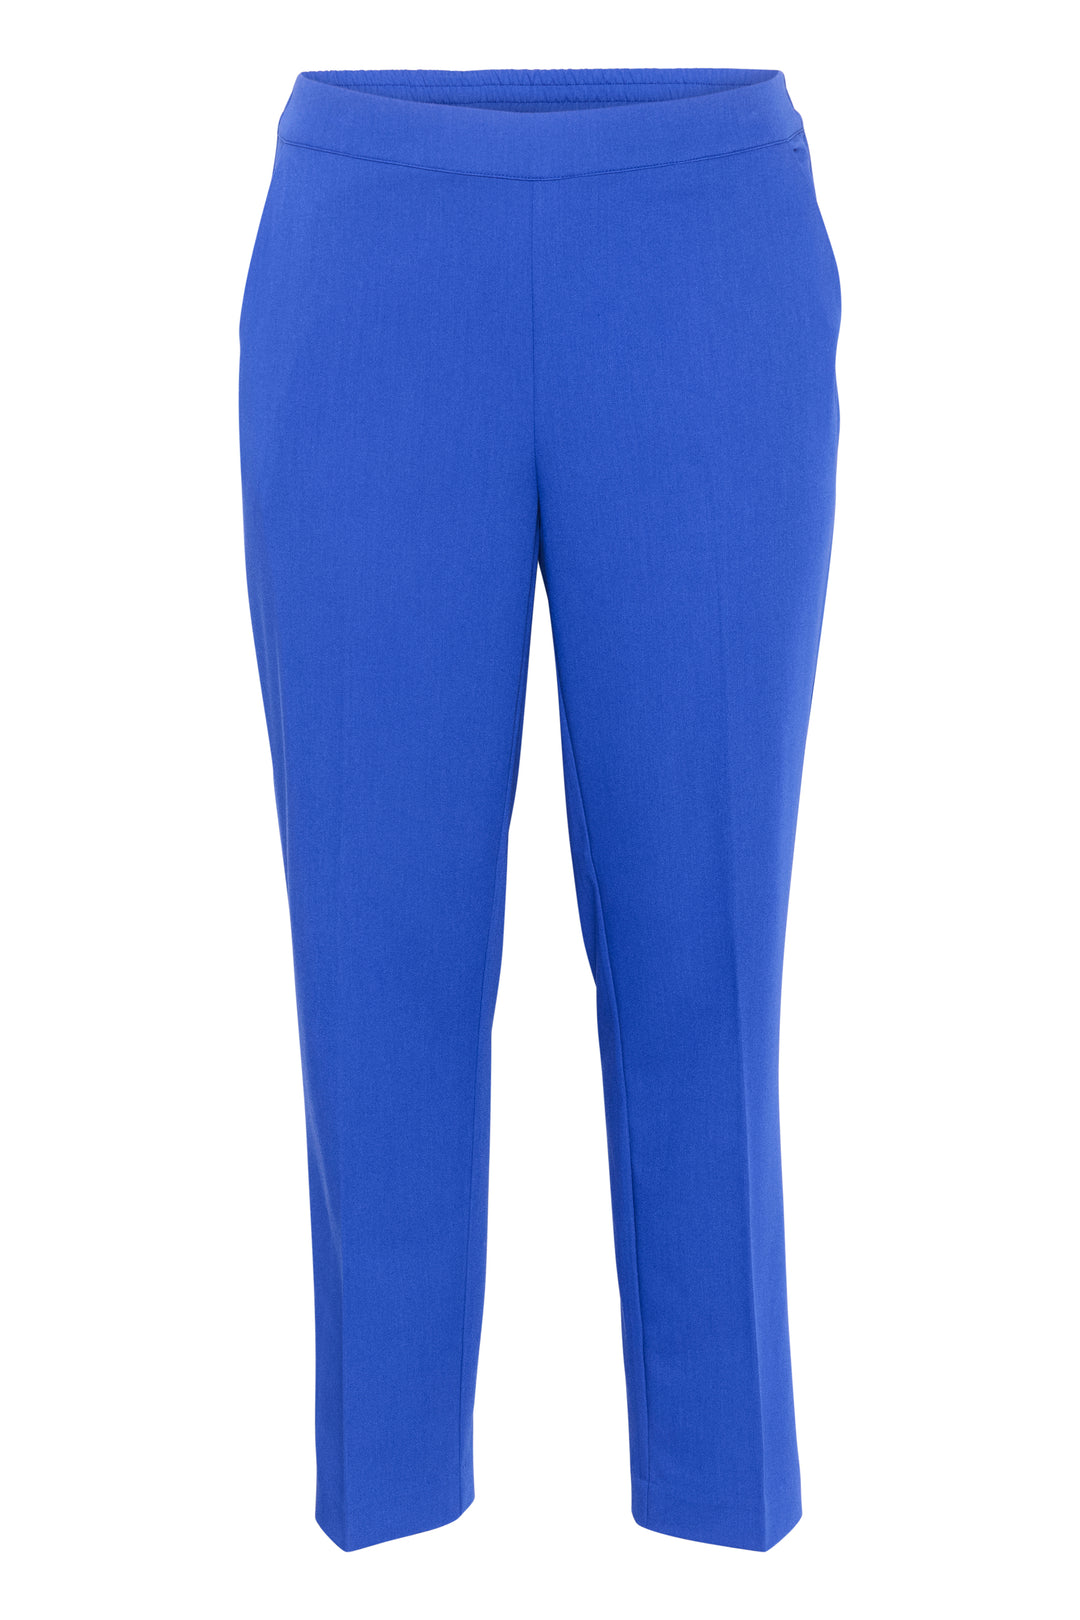 blauwe broek - kaffe curve - - grote maten - dameskleding - kledingwinkel - herent - leuven